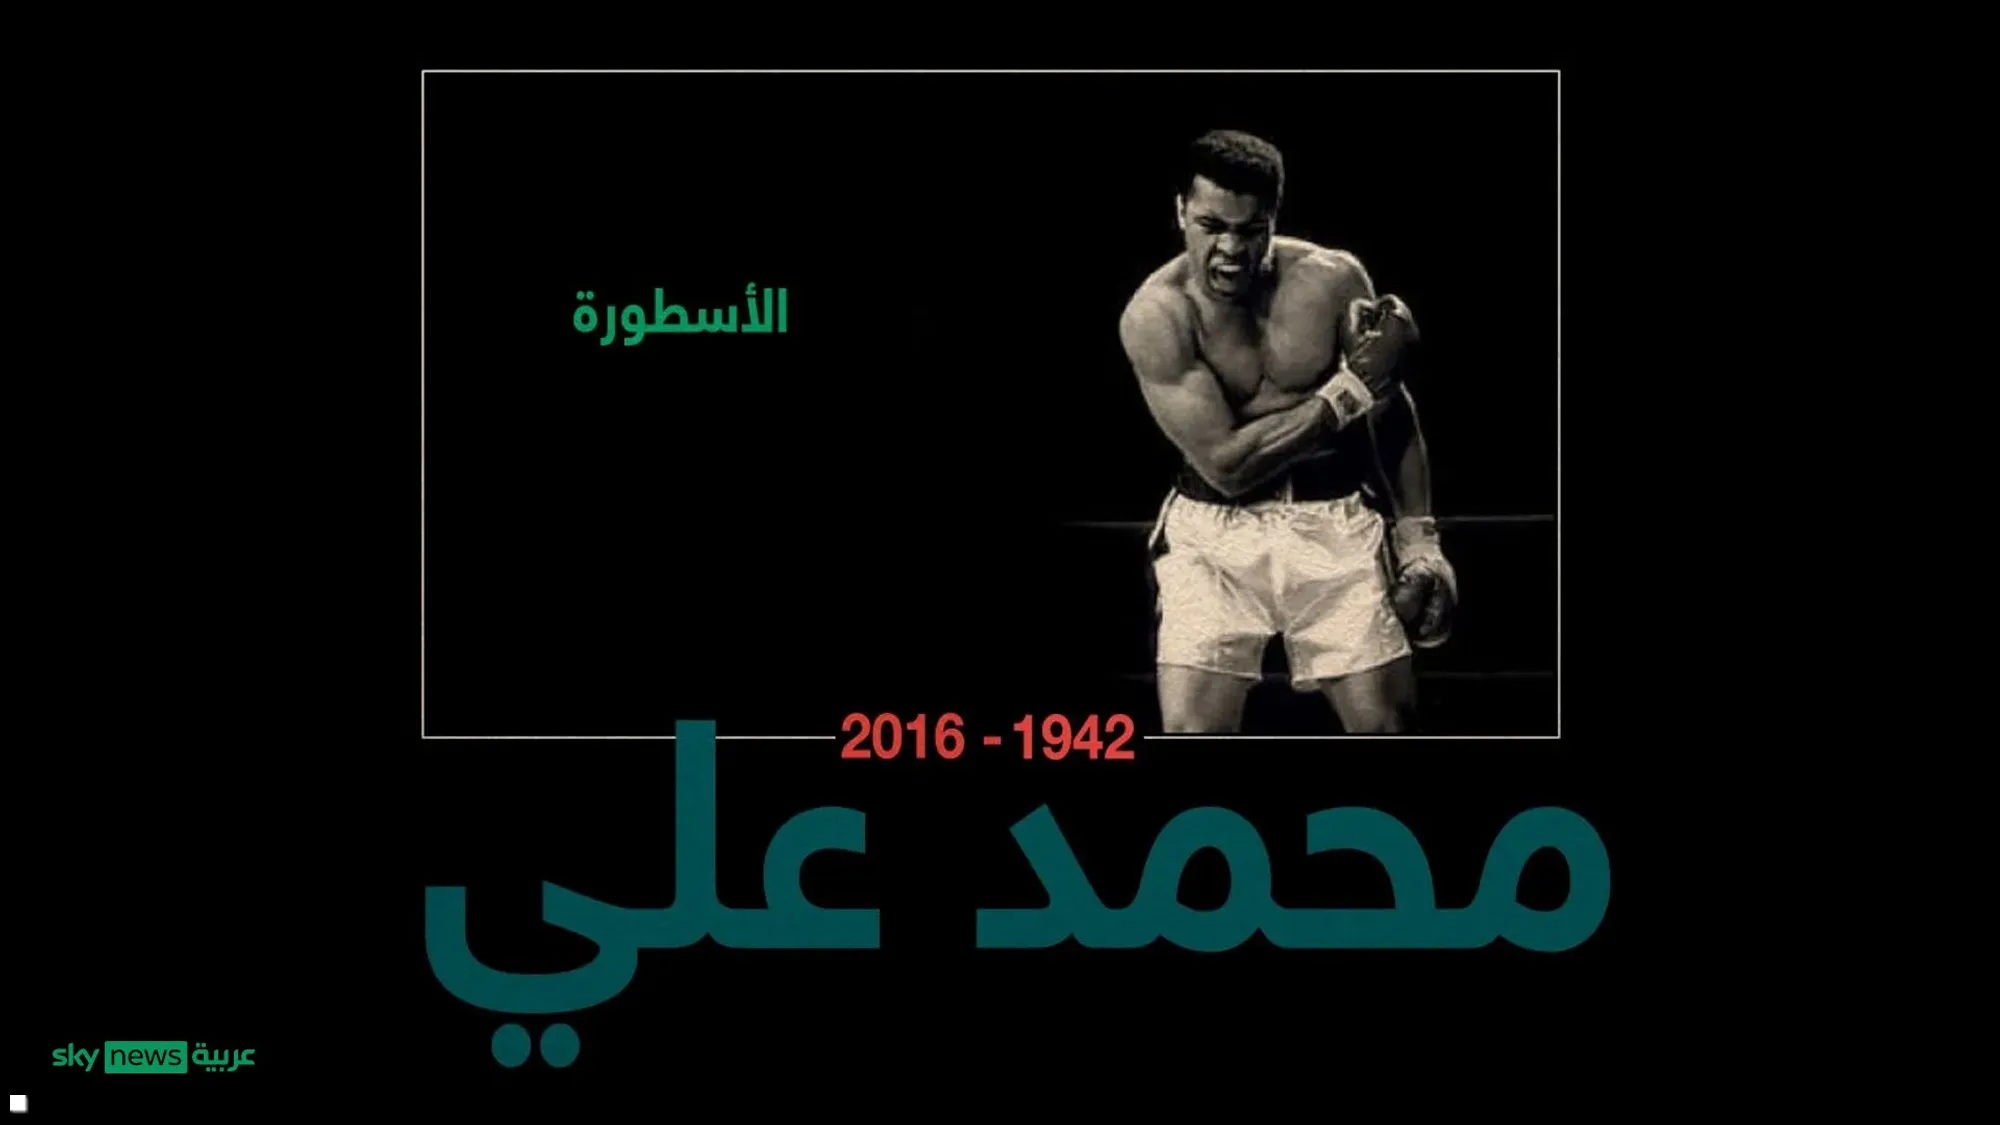 سروال الملاكم محمد علي… بـ 6 ملايين دولار!